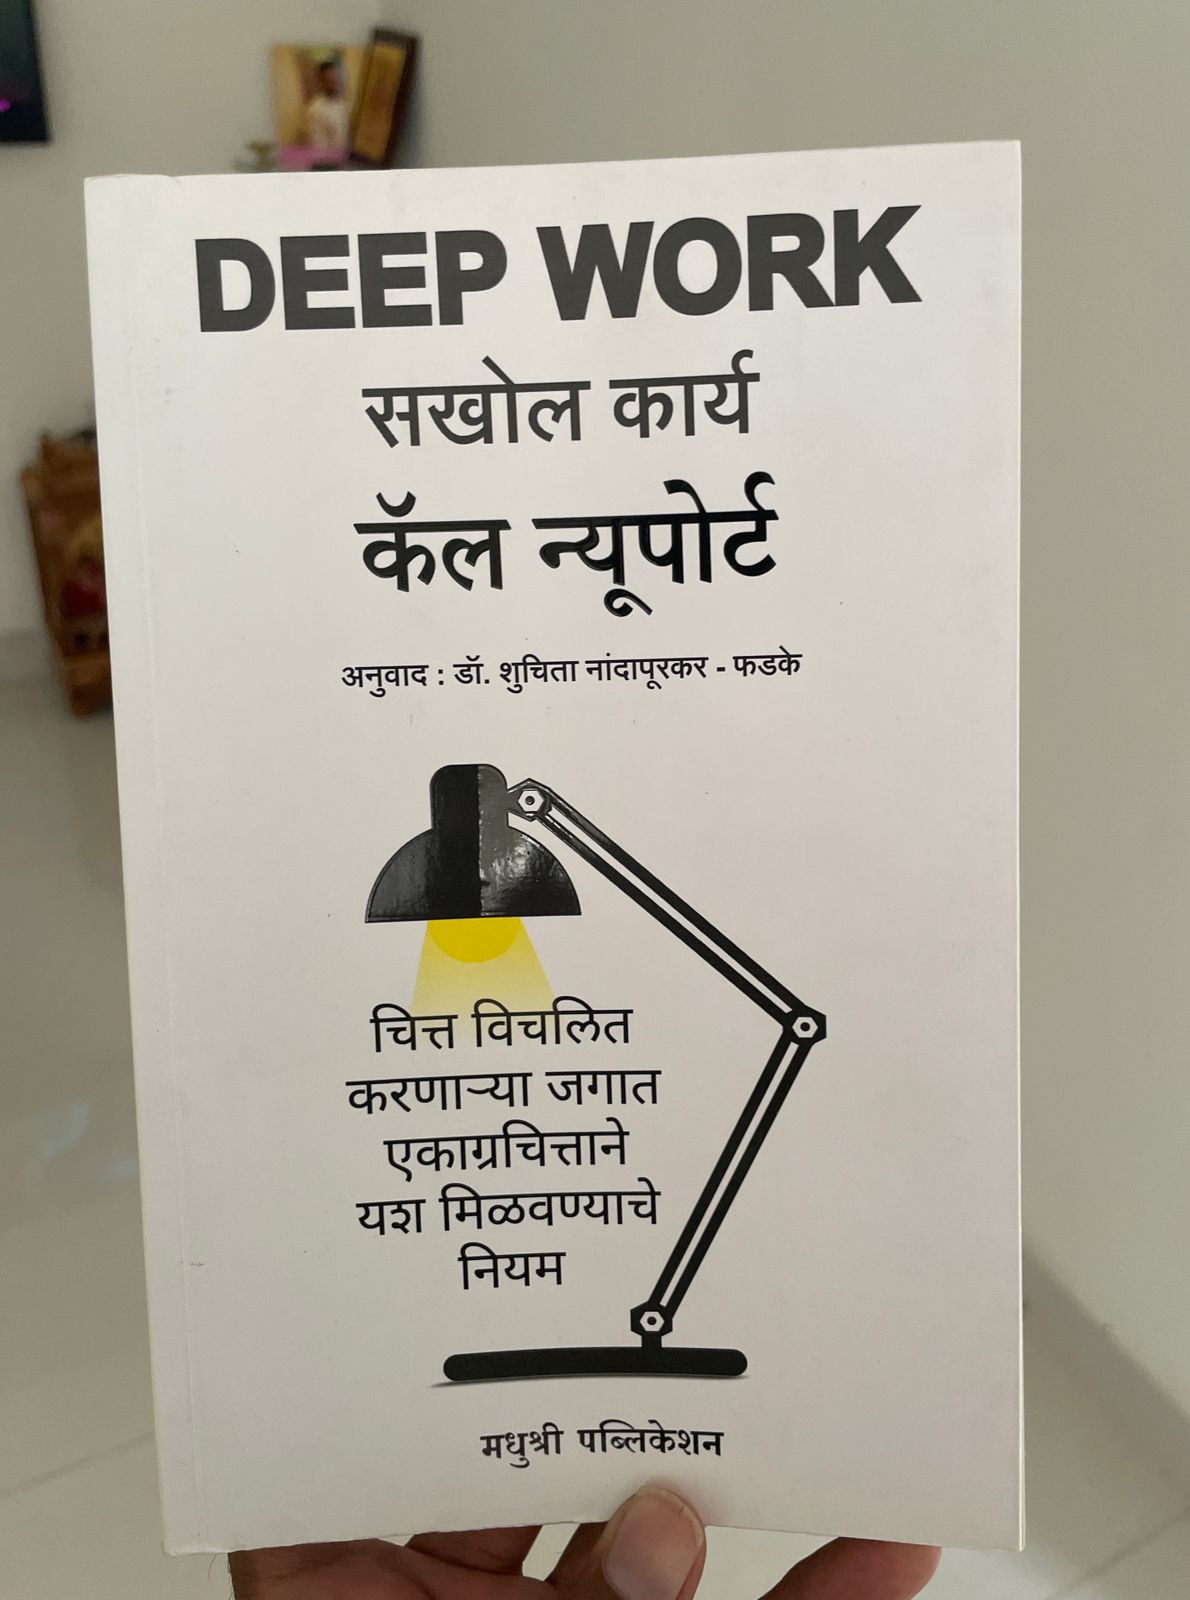 Deep Work – Book by Cal Newport | या पुस्तकाचा अभ्यास करा आणि अधिक यश प्राप्त करा 